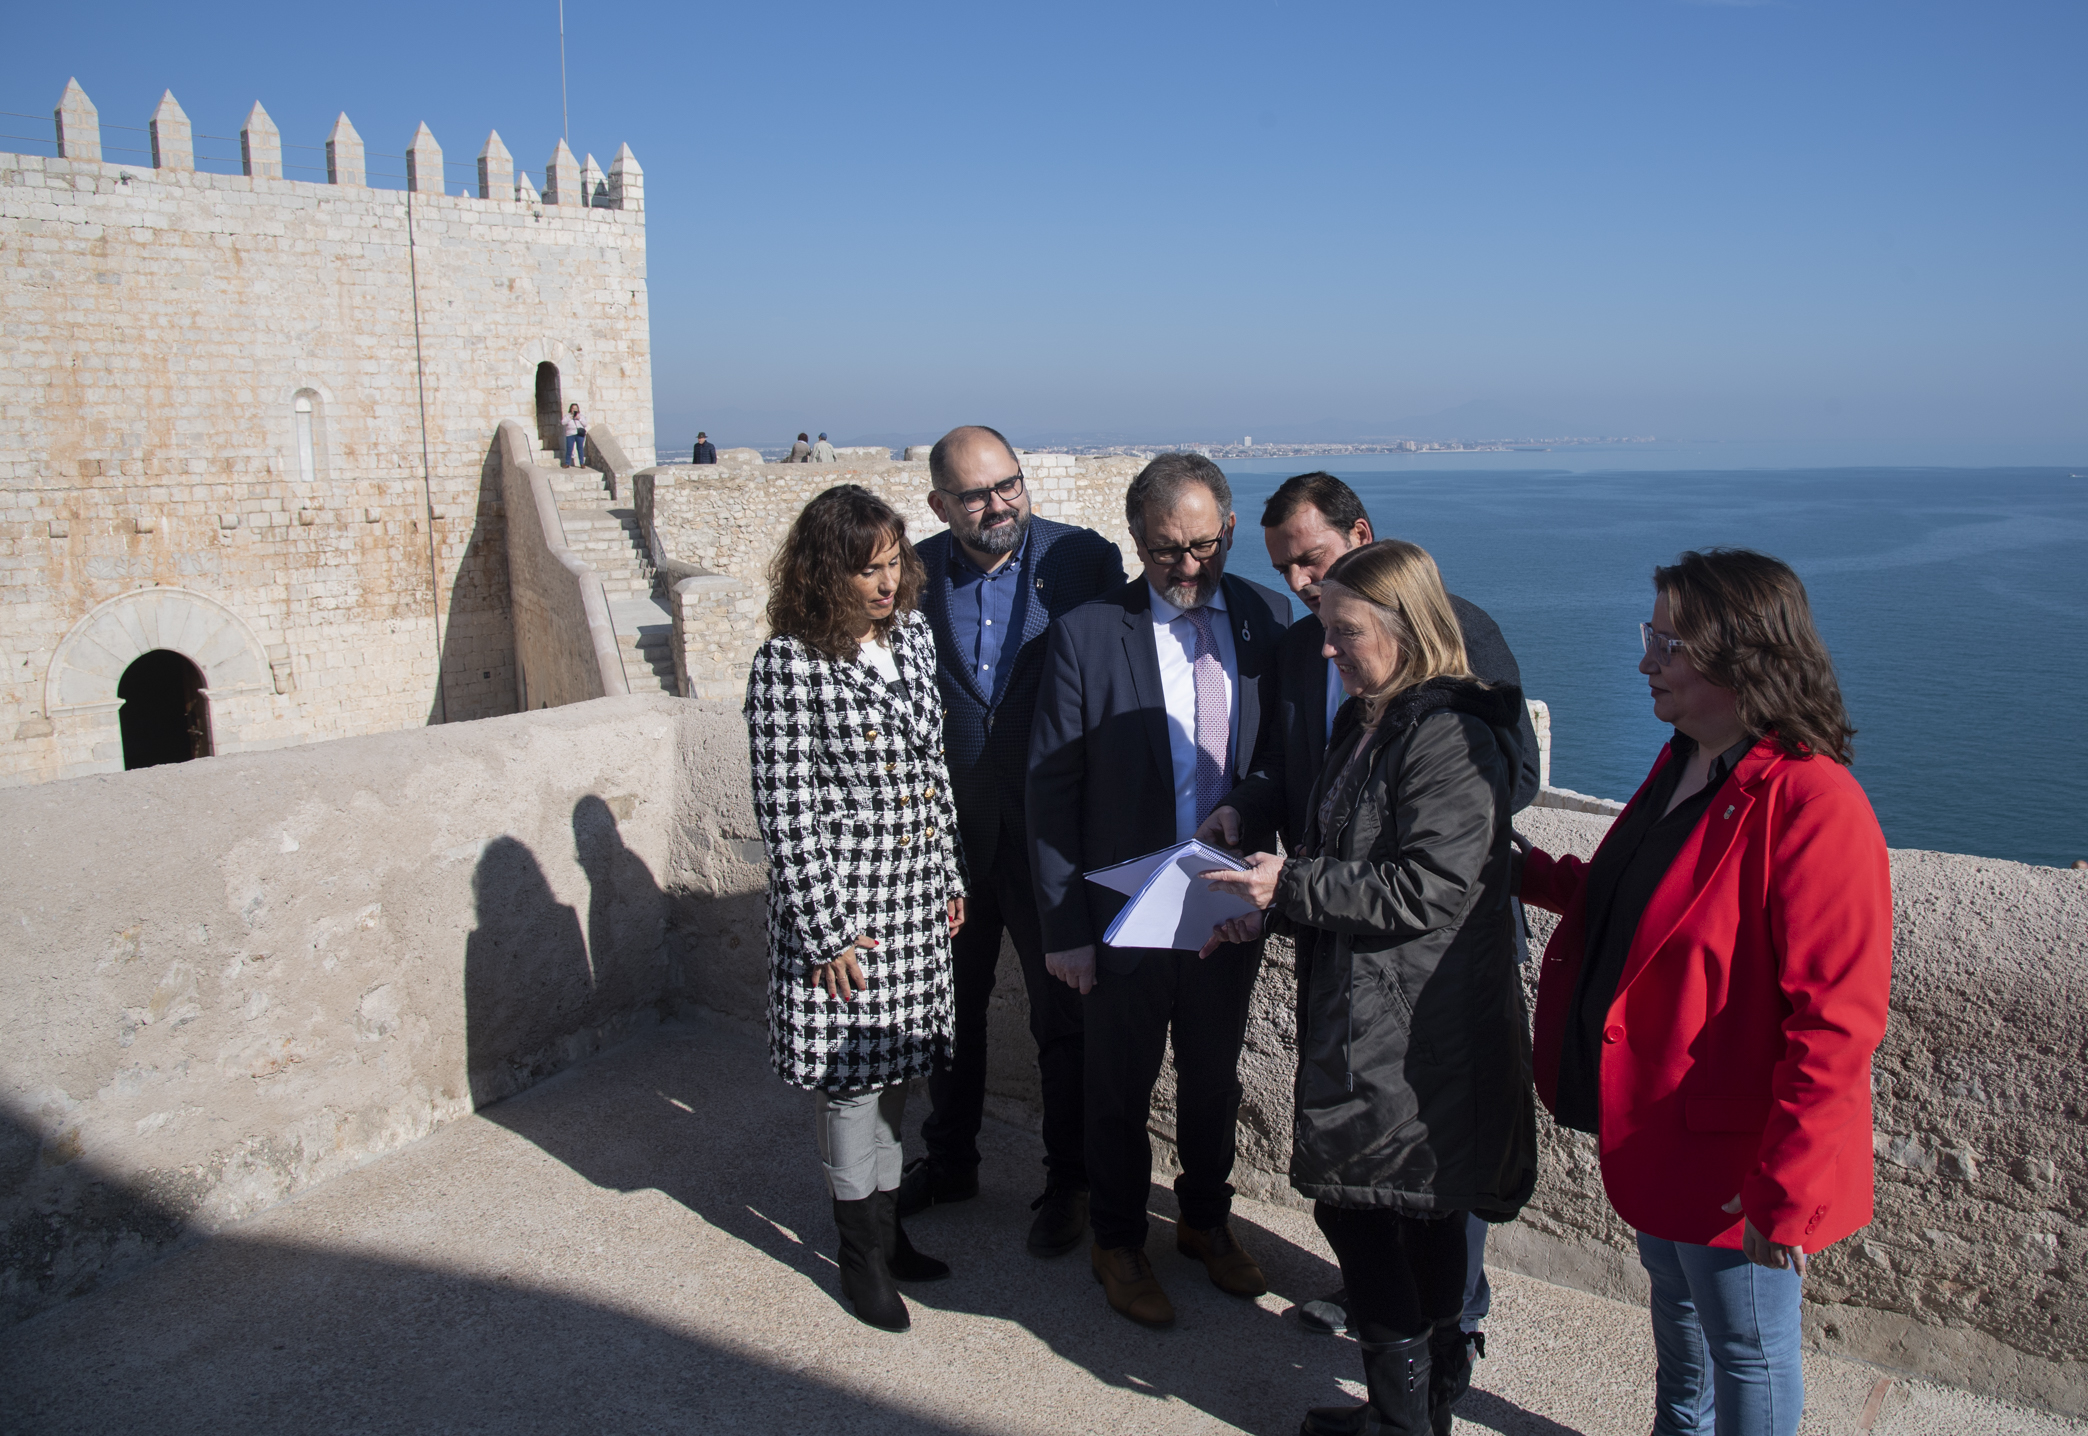 La Diputació celebra el Dia Mundial del Turisme amb una jornada de portes obertes al Castell de Peníscola